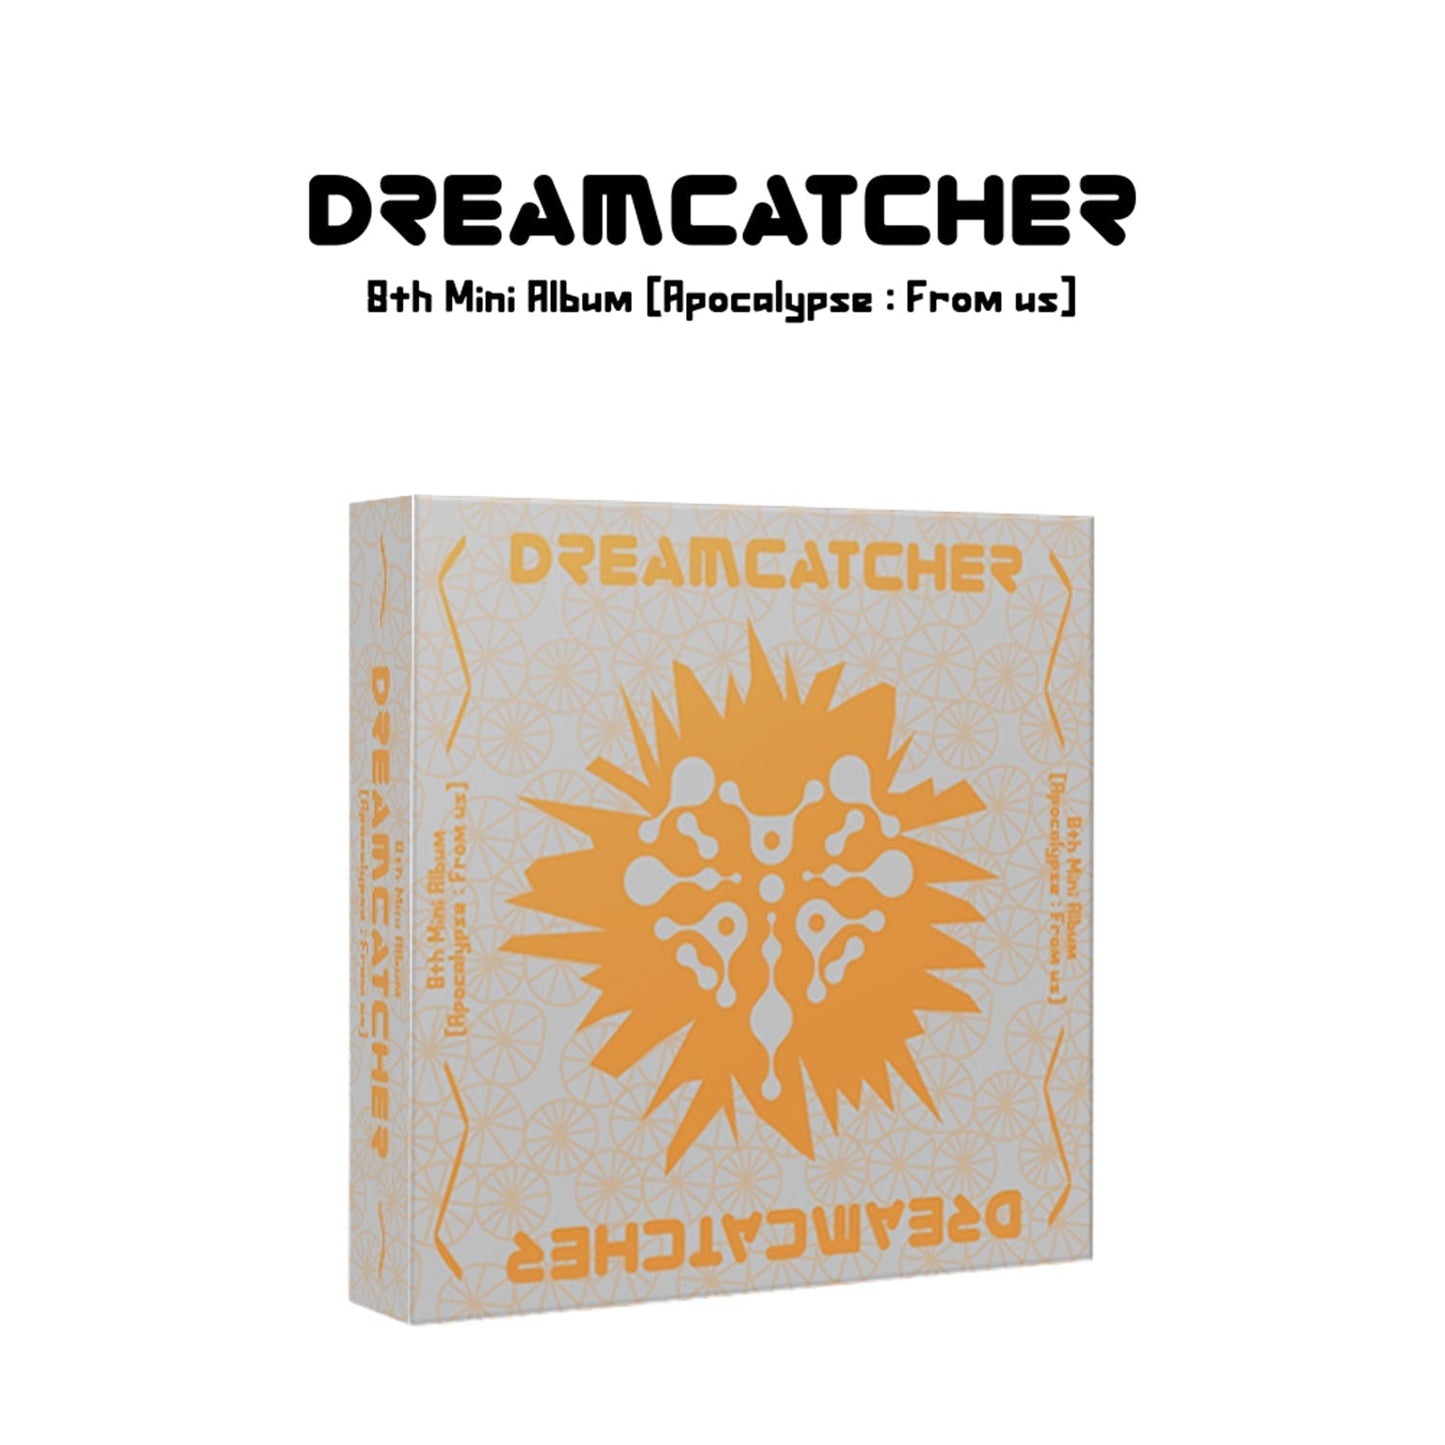 DREAMCATCHER 8TH MINI ALBUM 'APOCALYPSE : FROM US' A VERSION COVER